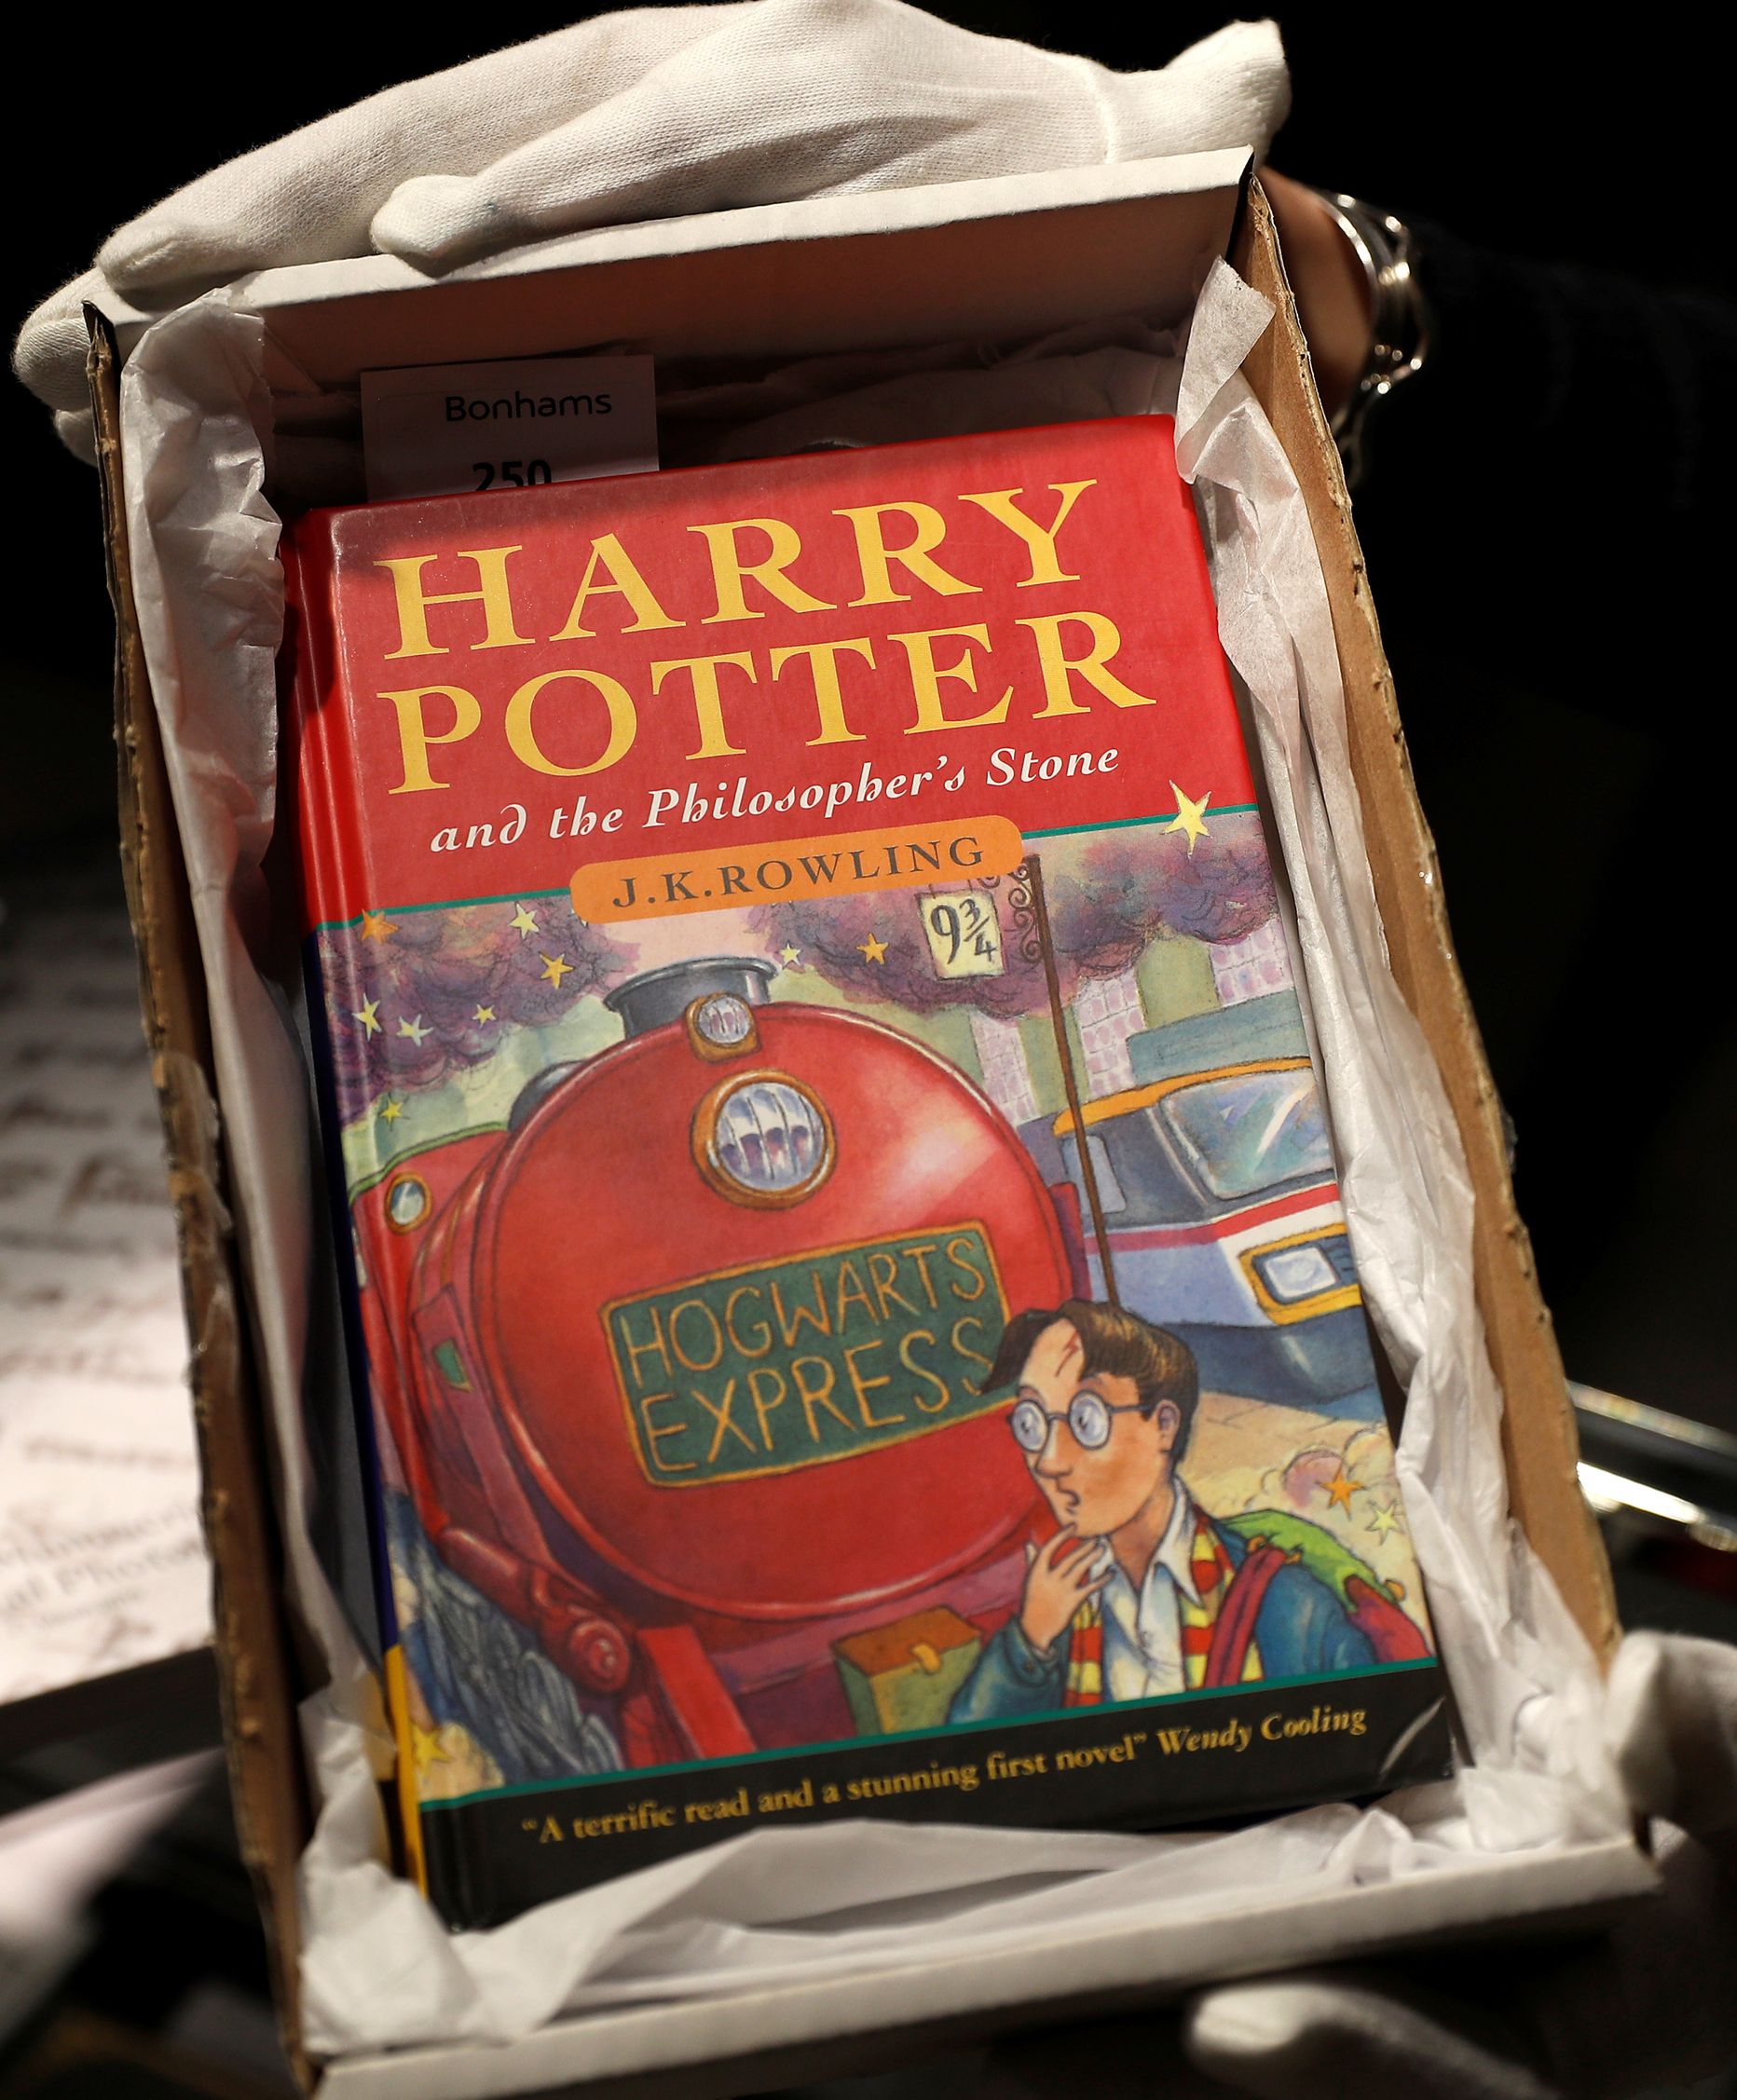 Grāmatas "Harijs Poters un filozofu akmens" pirmais izdevums angļu valodā.